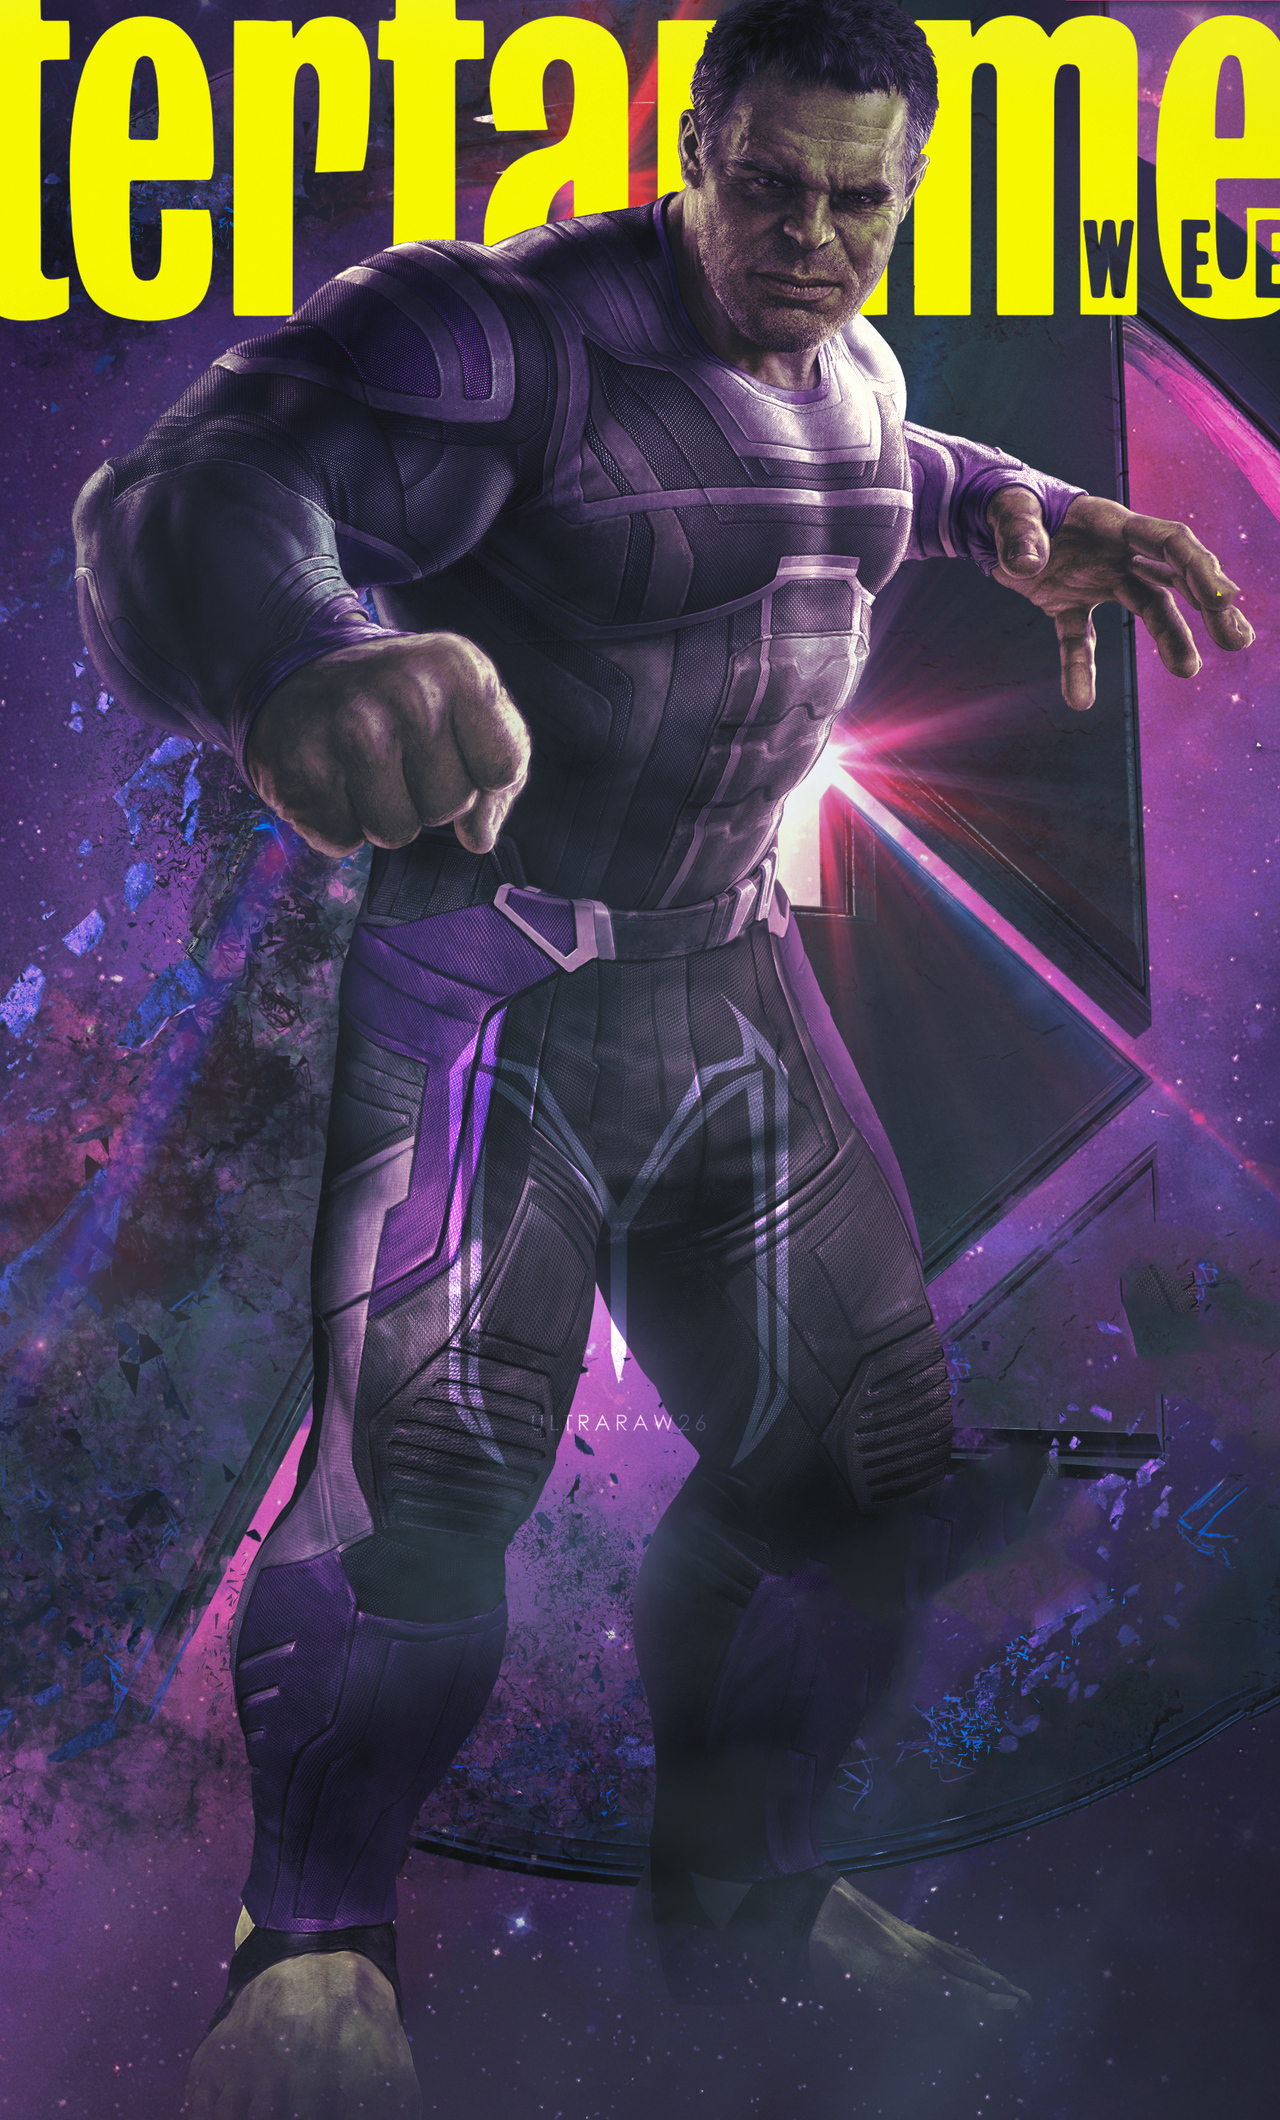 Hulk In Avengers Endgame Wallpapers